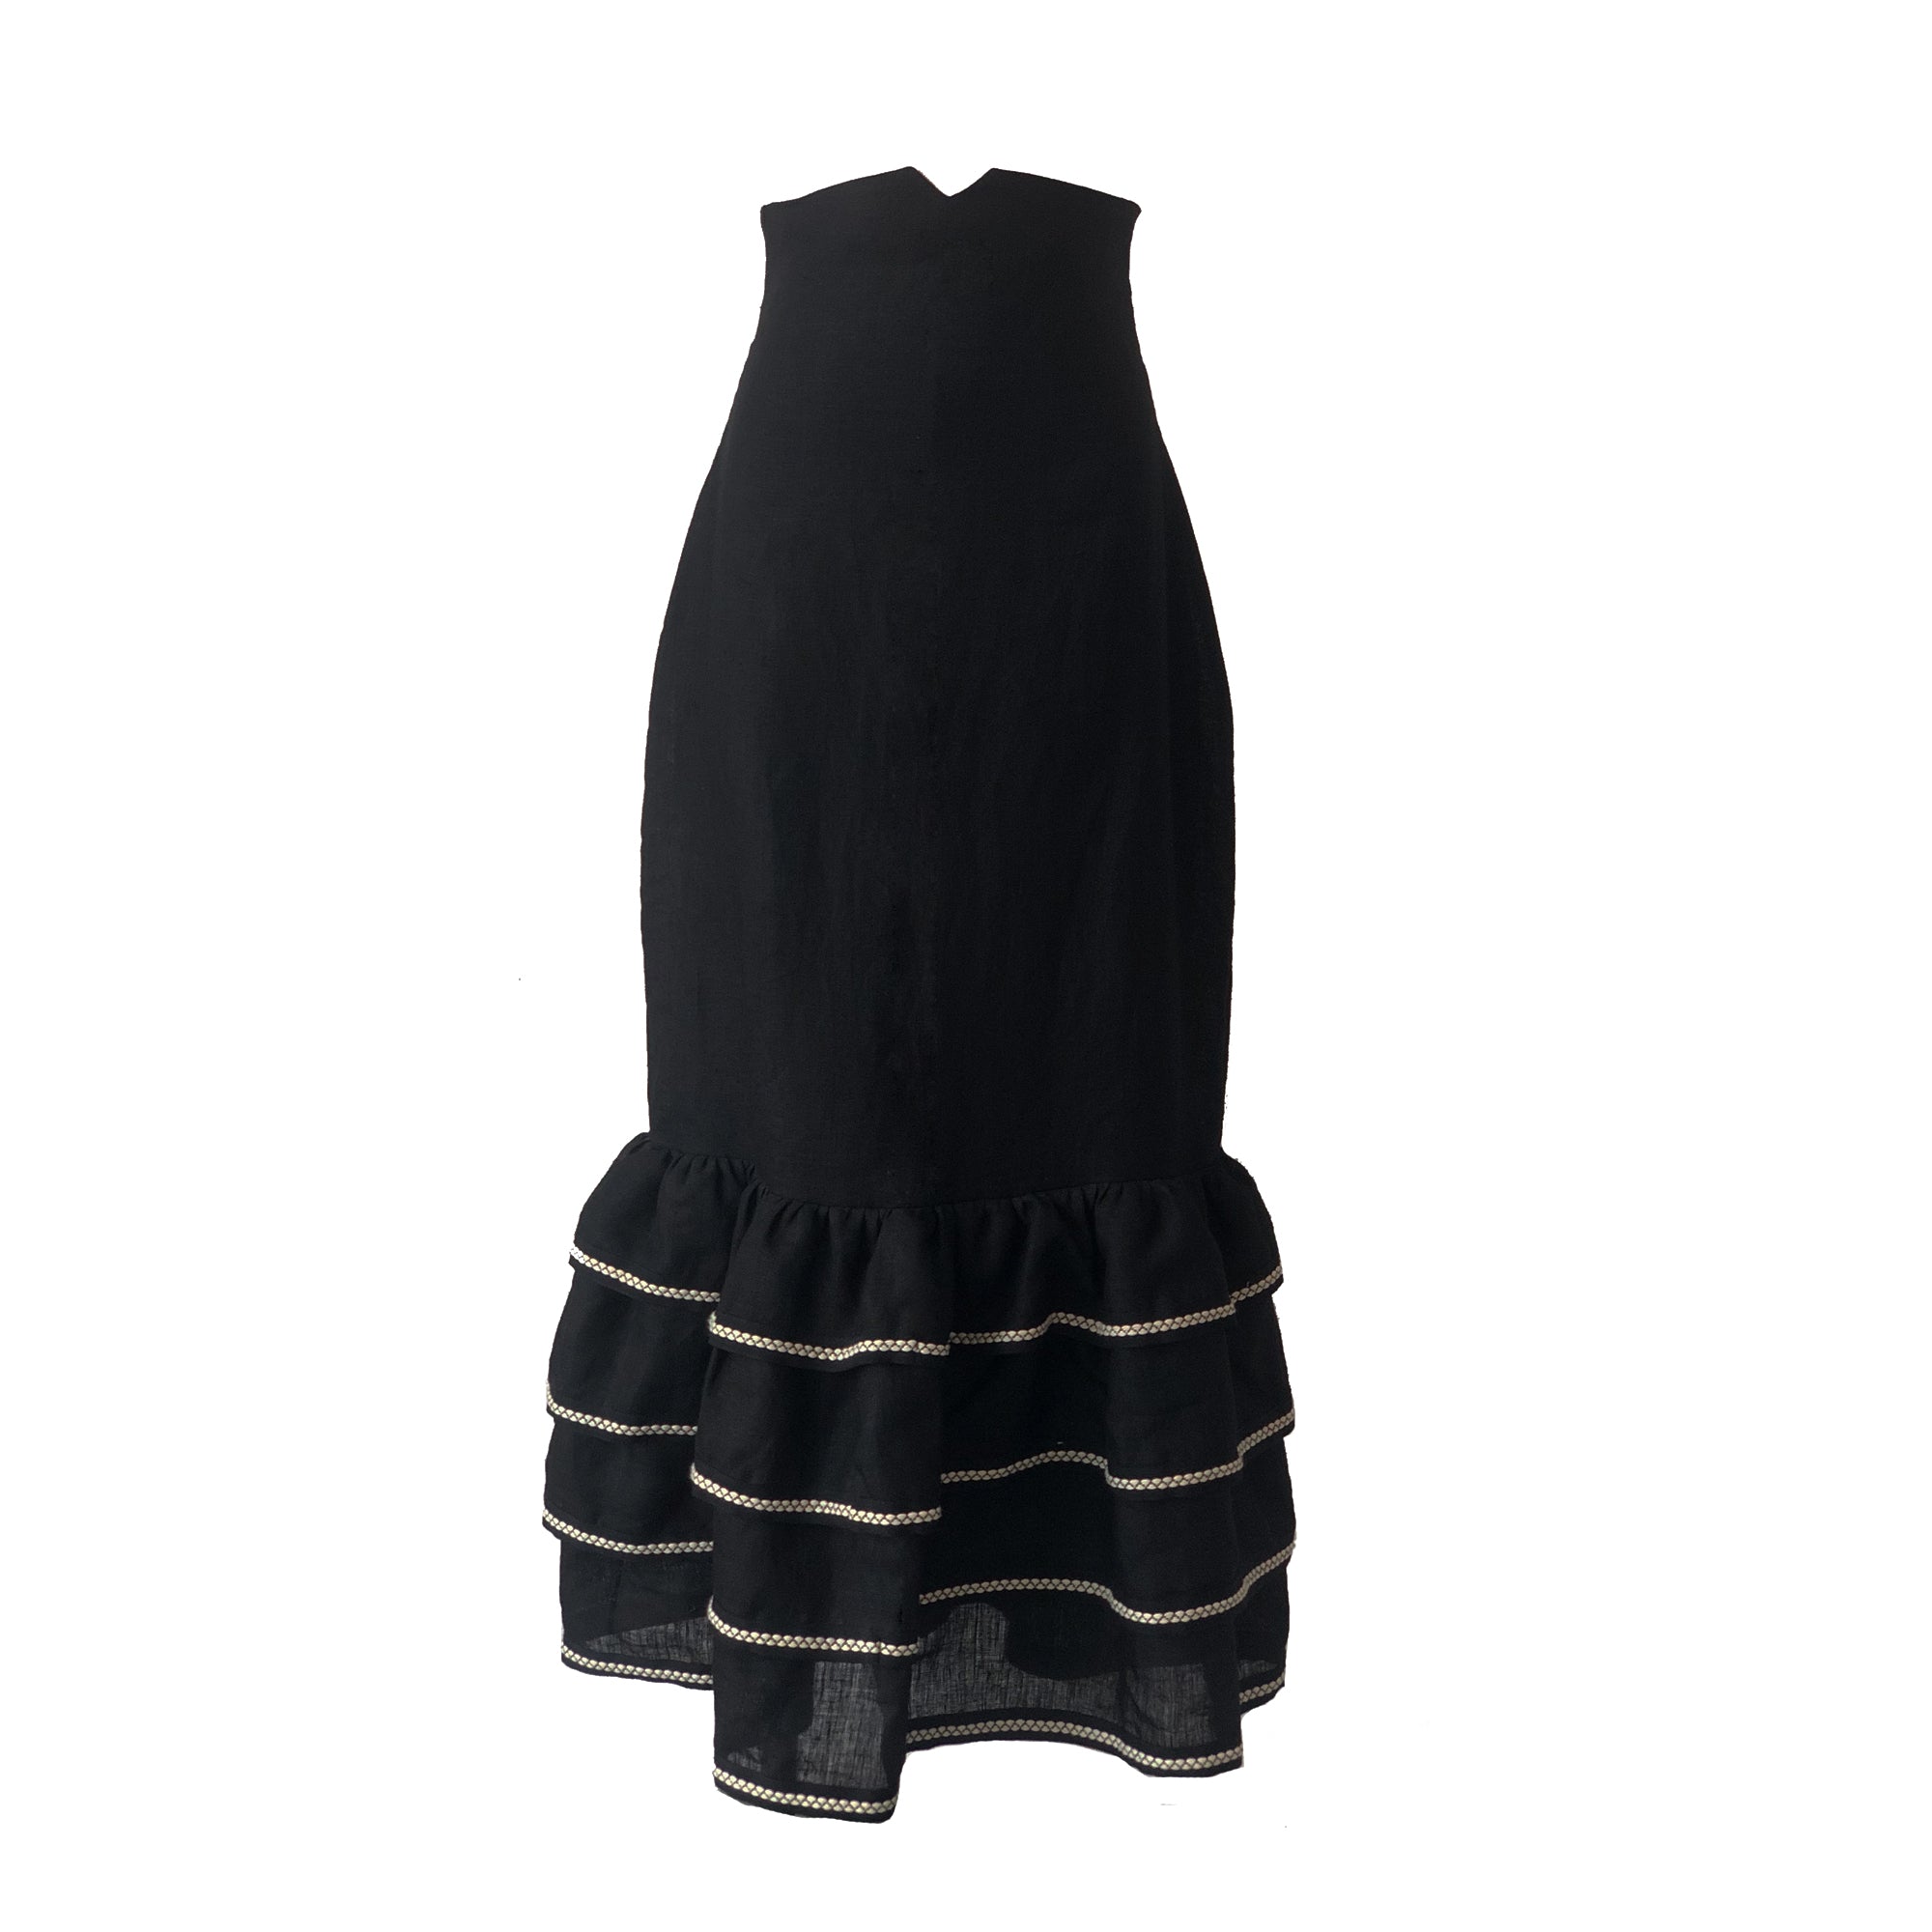 Black and white flamenco skirt for women